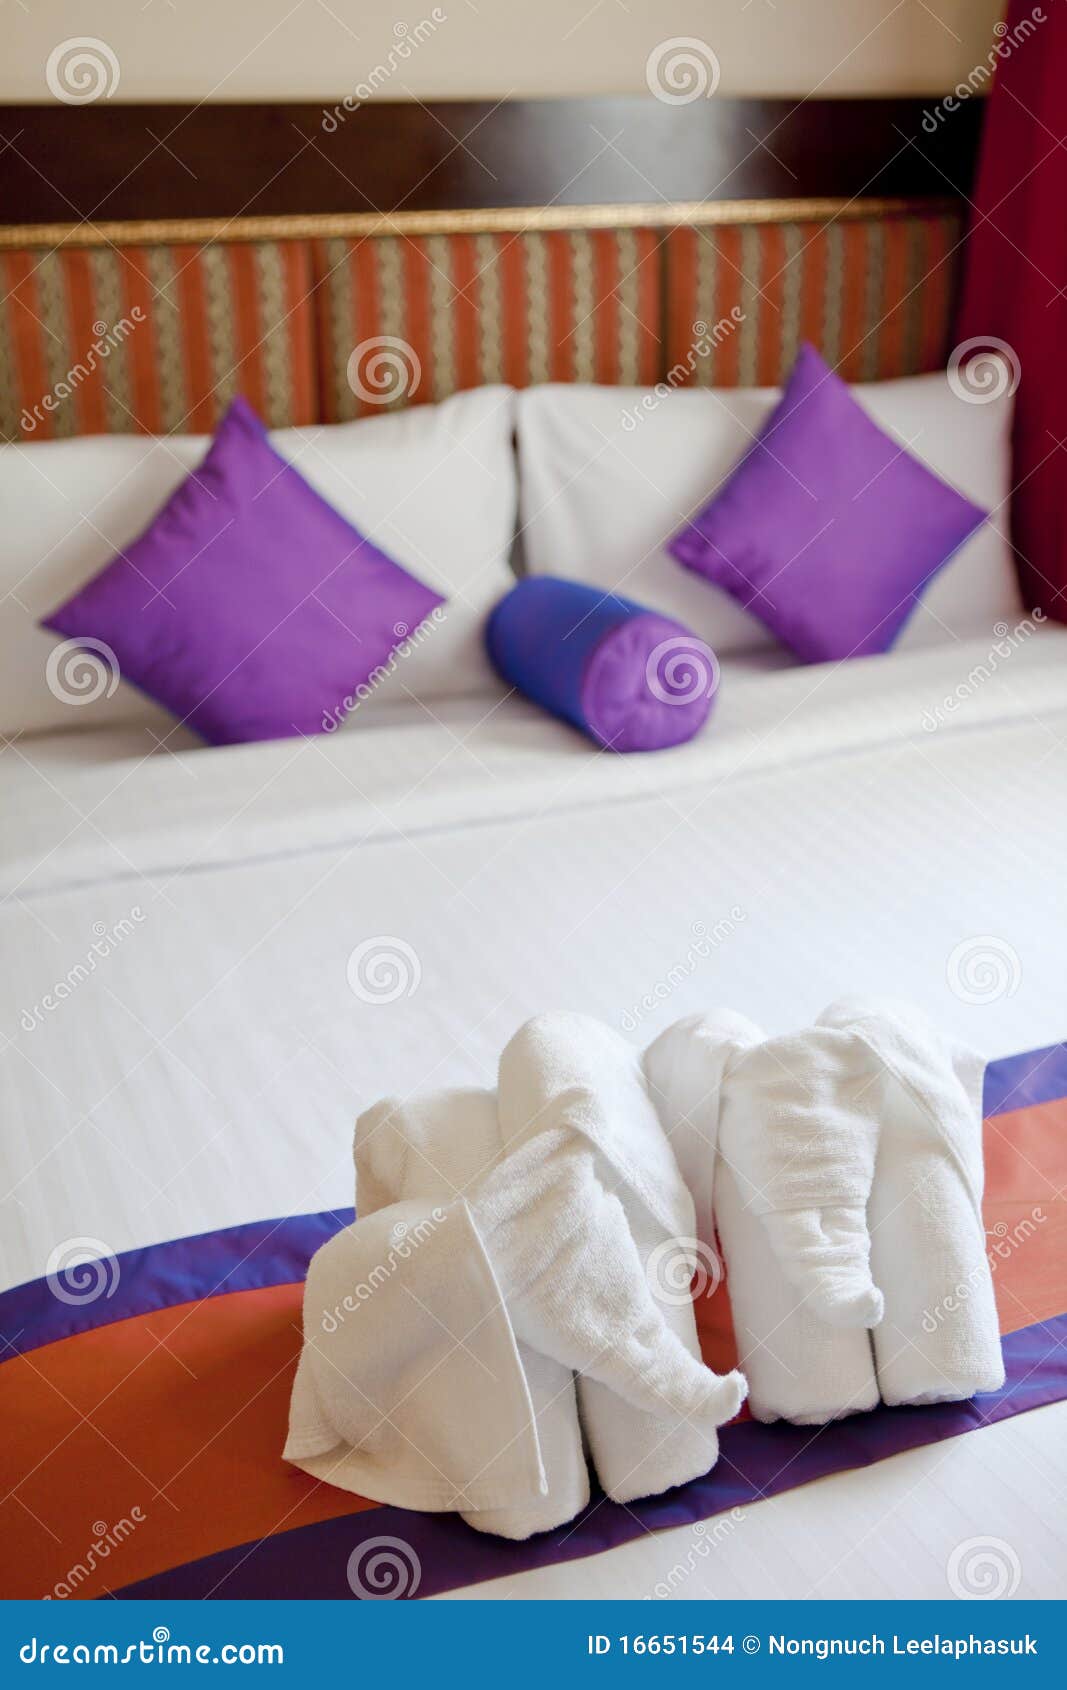 Полотенце на кровати